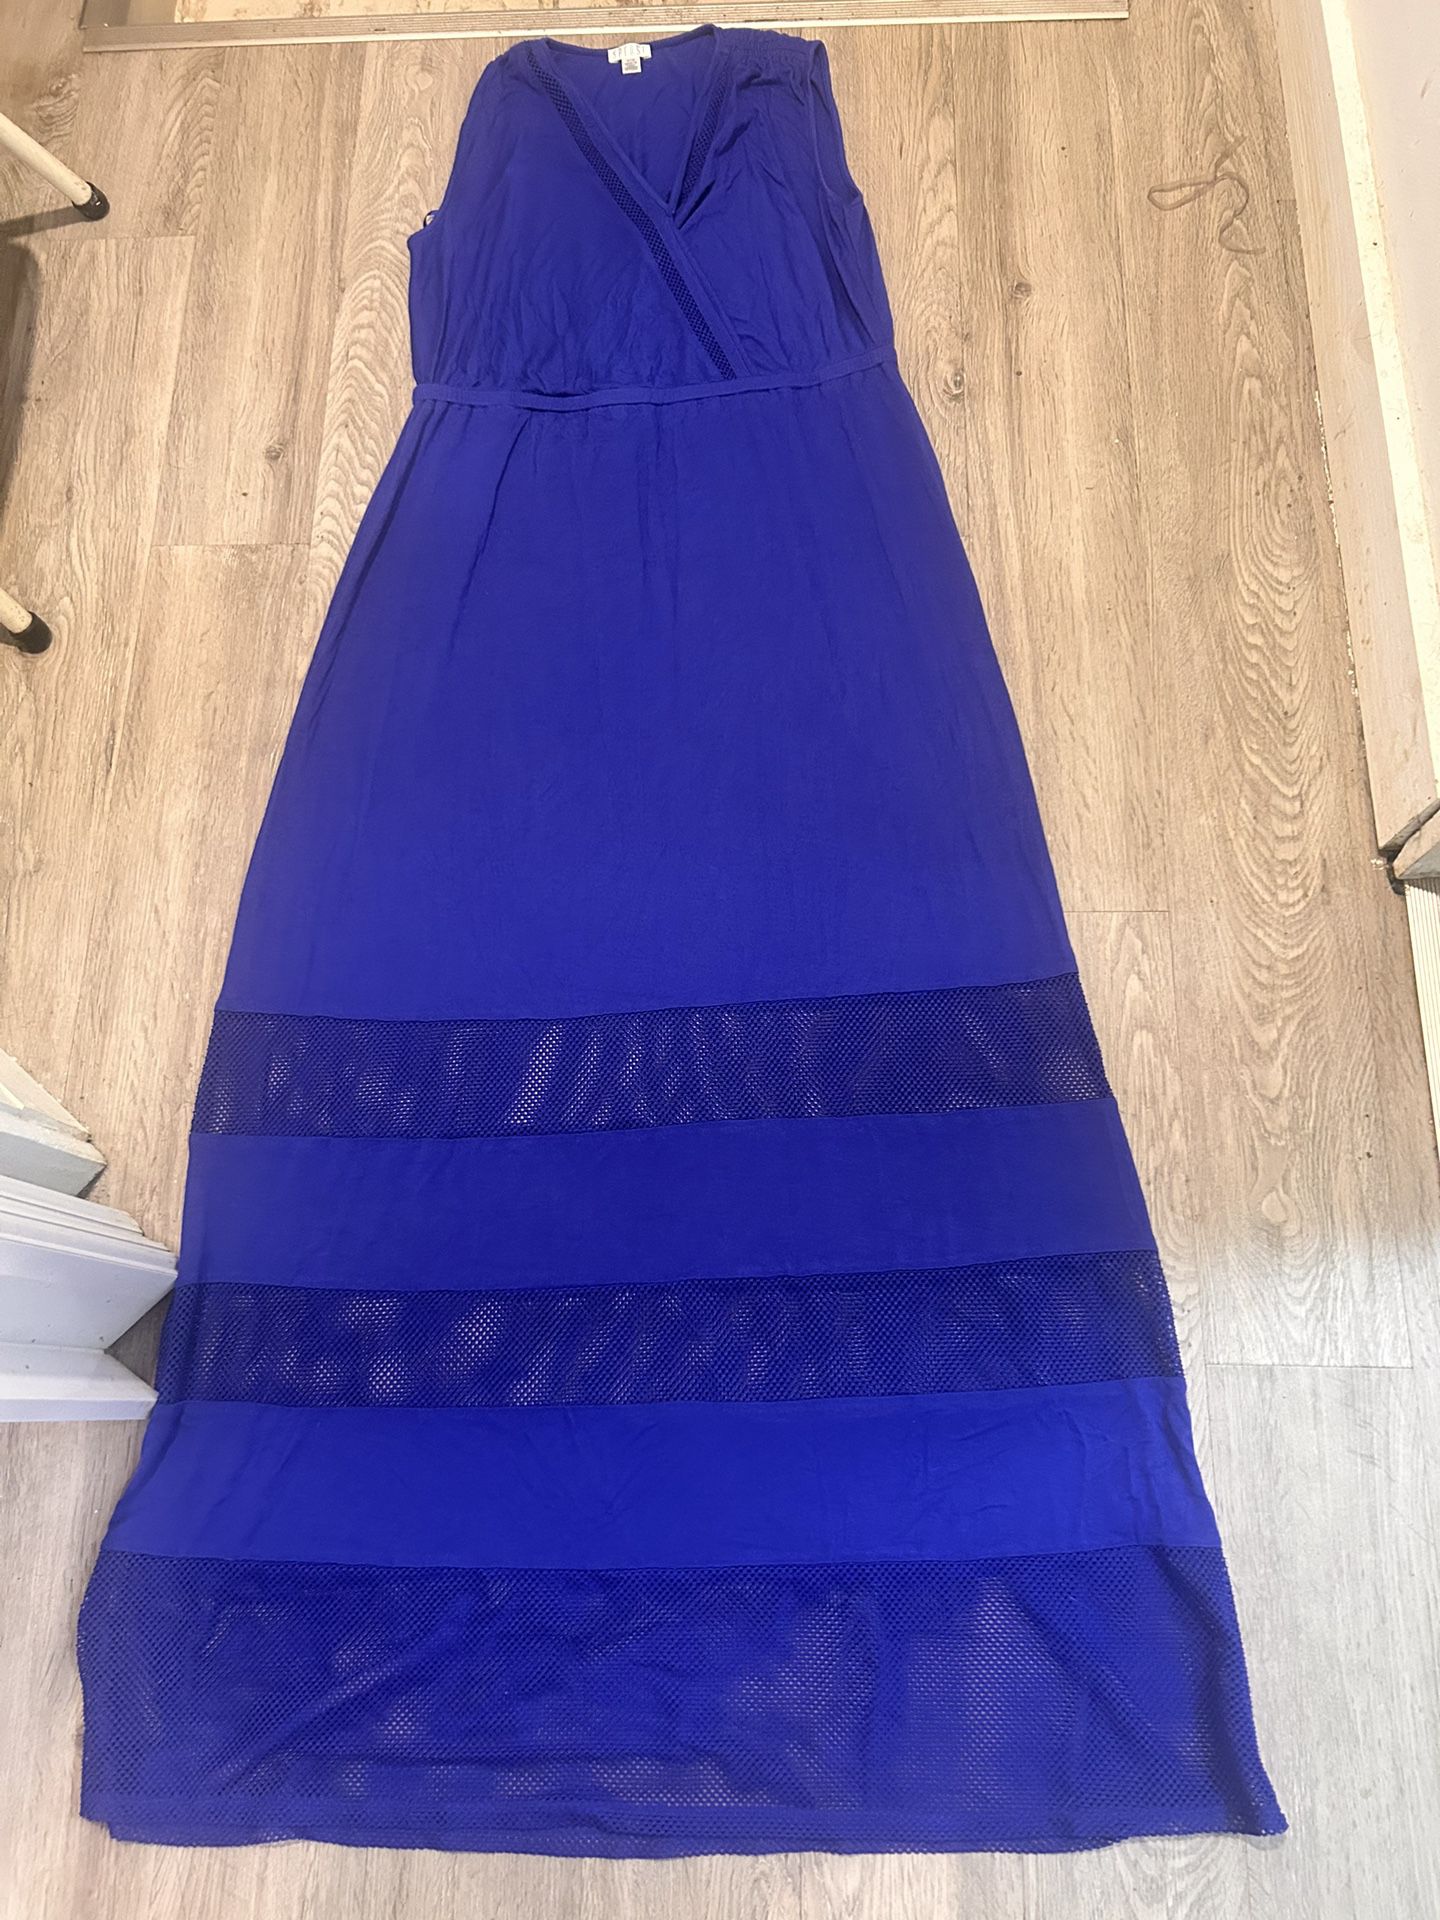 NWOT Spense Blue Dress